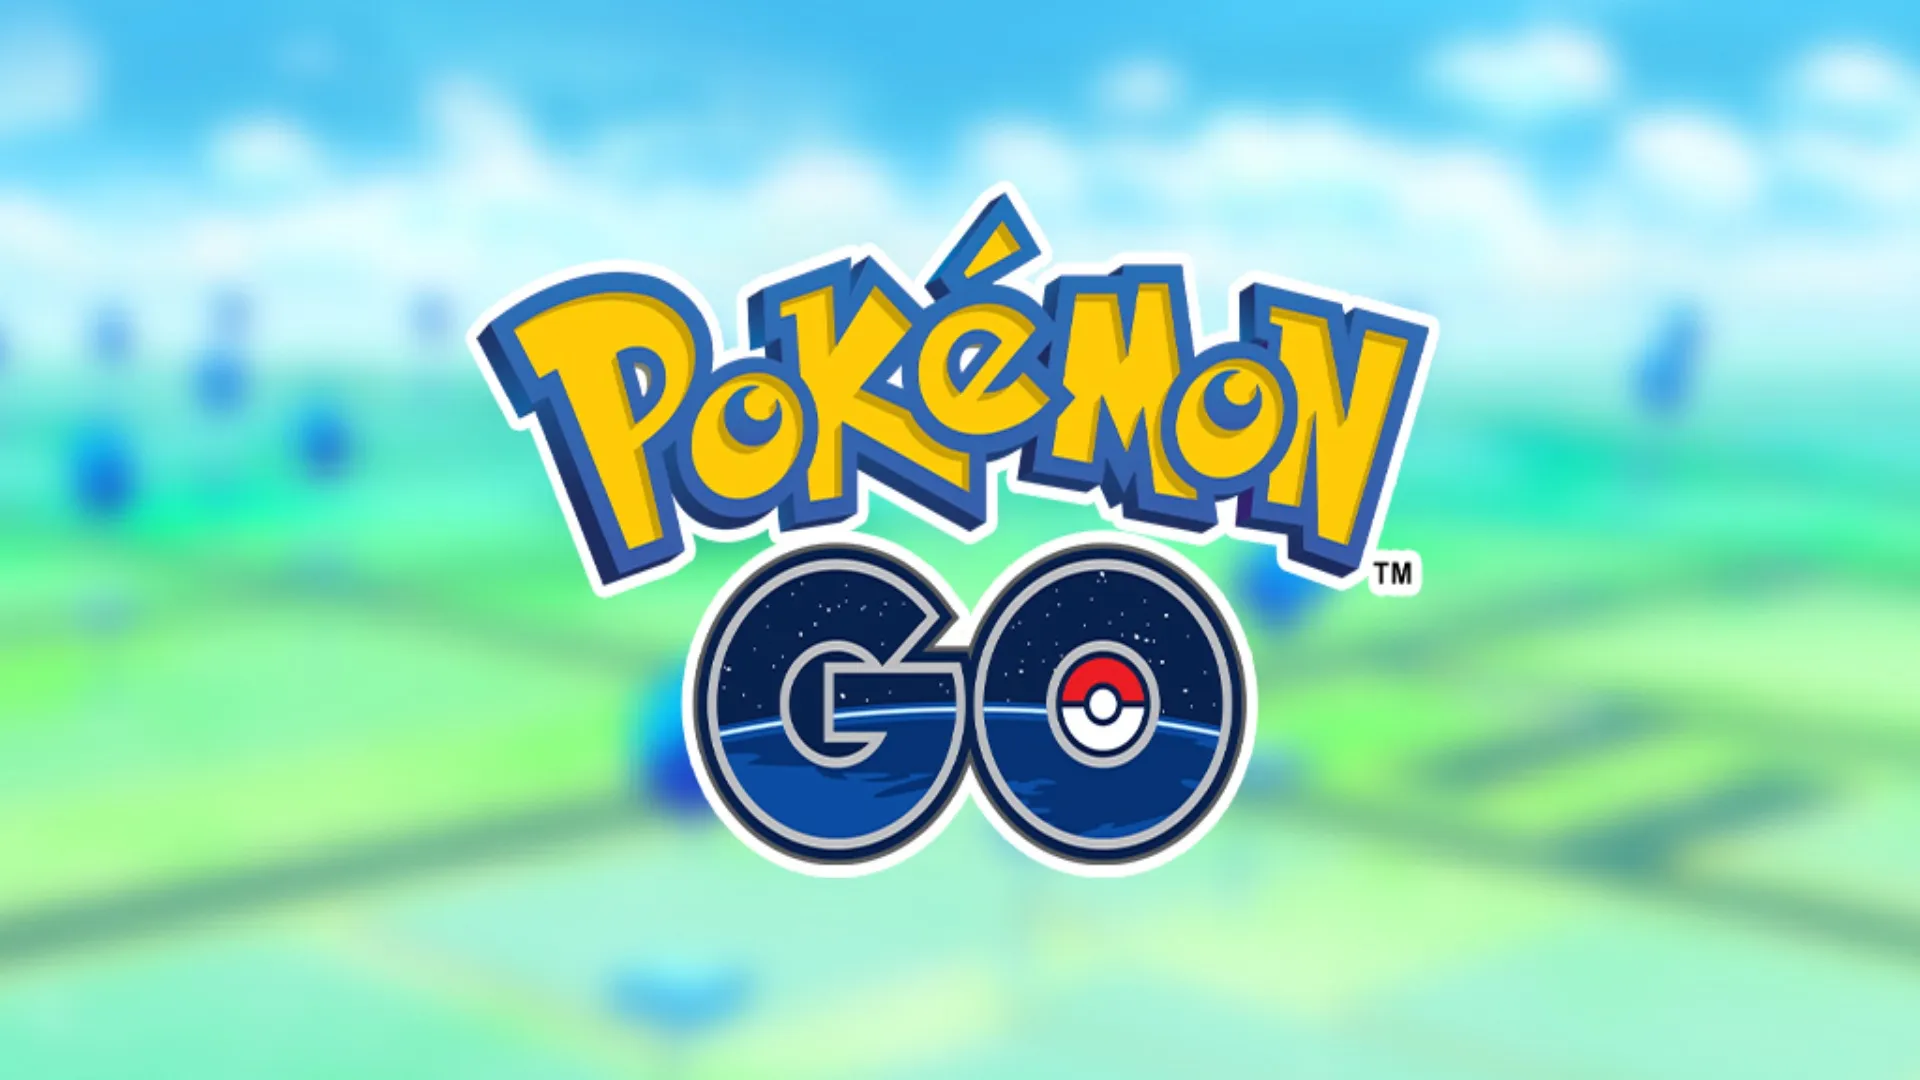 Pokémon GO community day